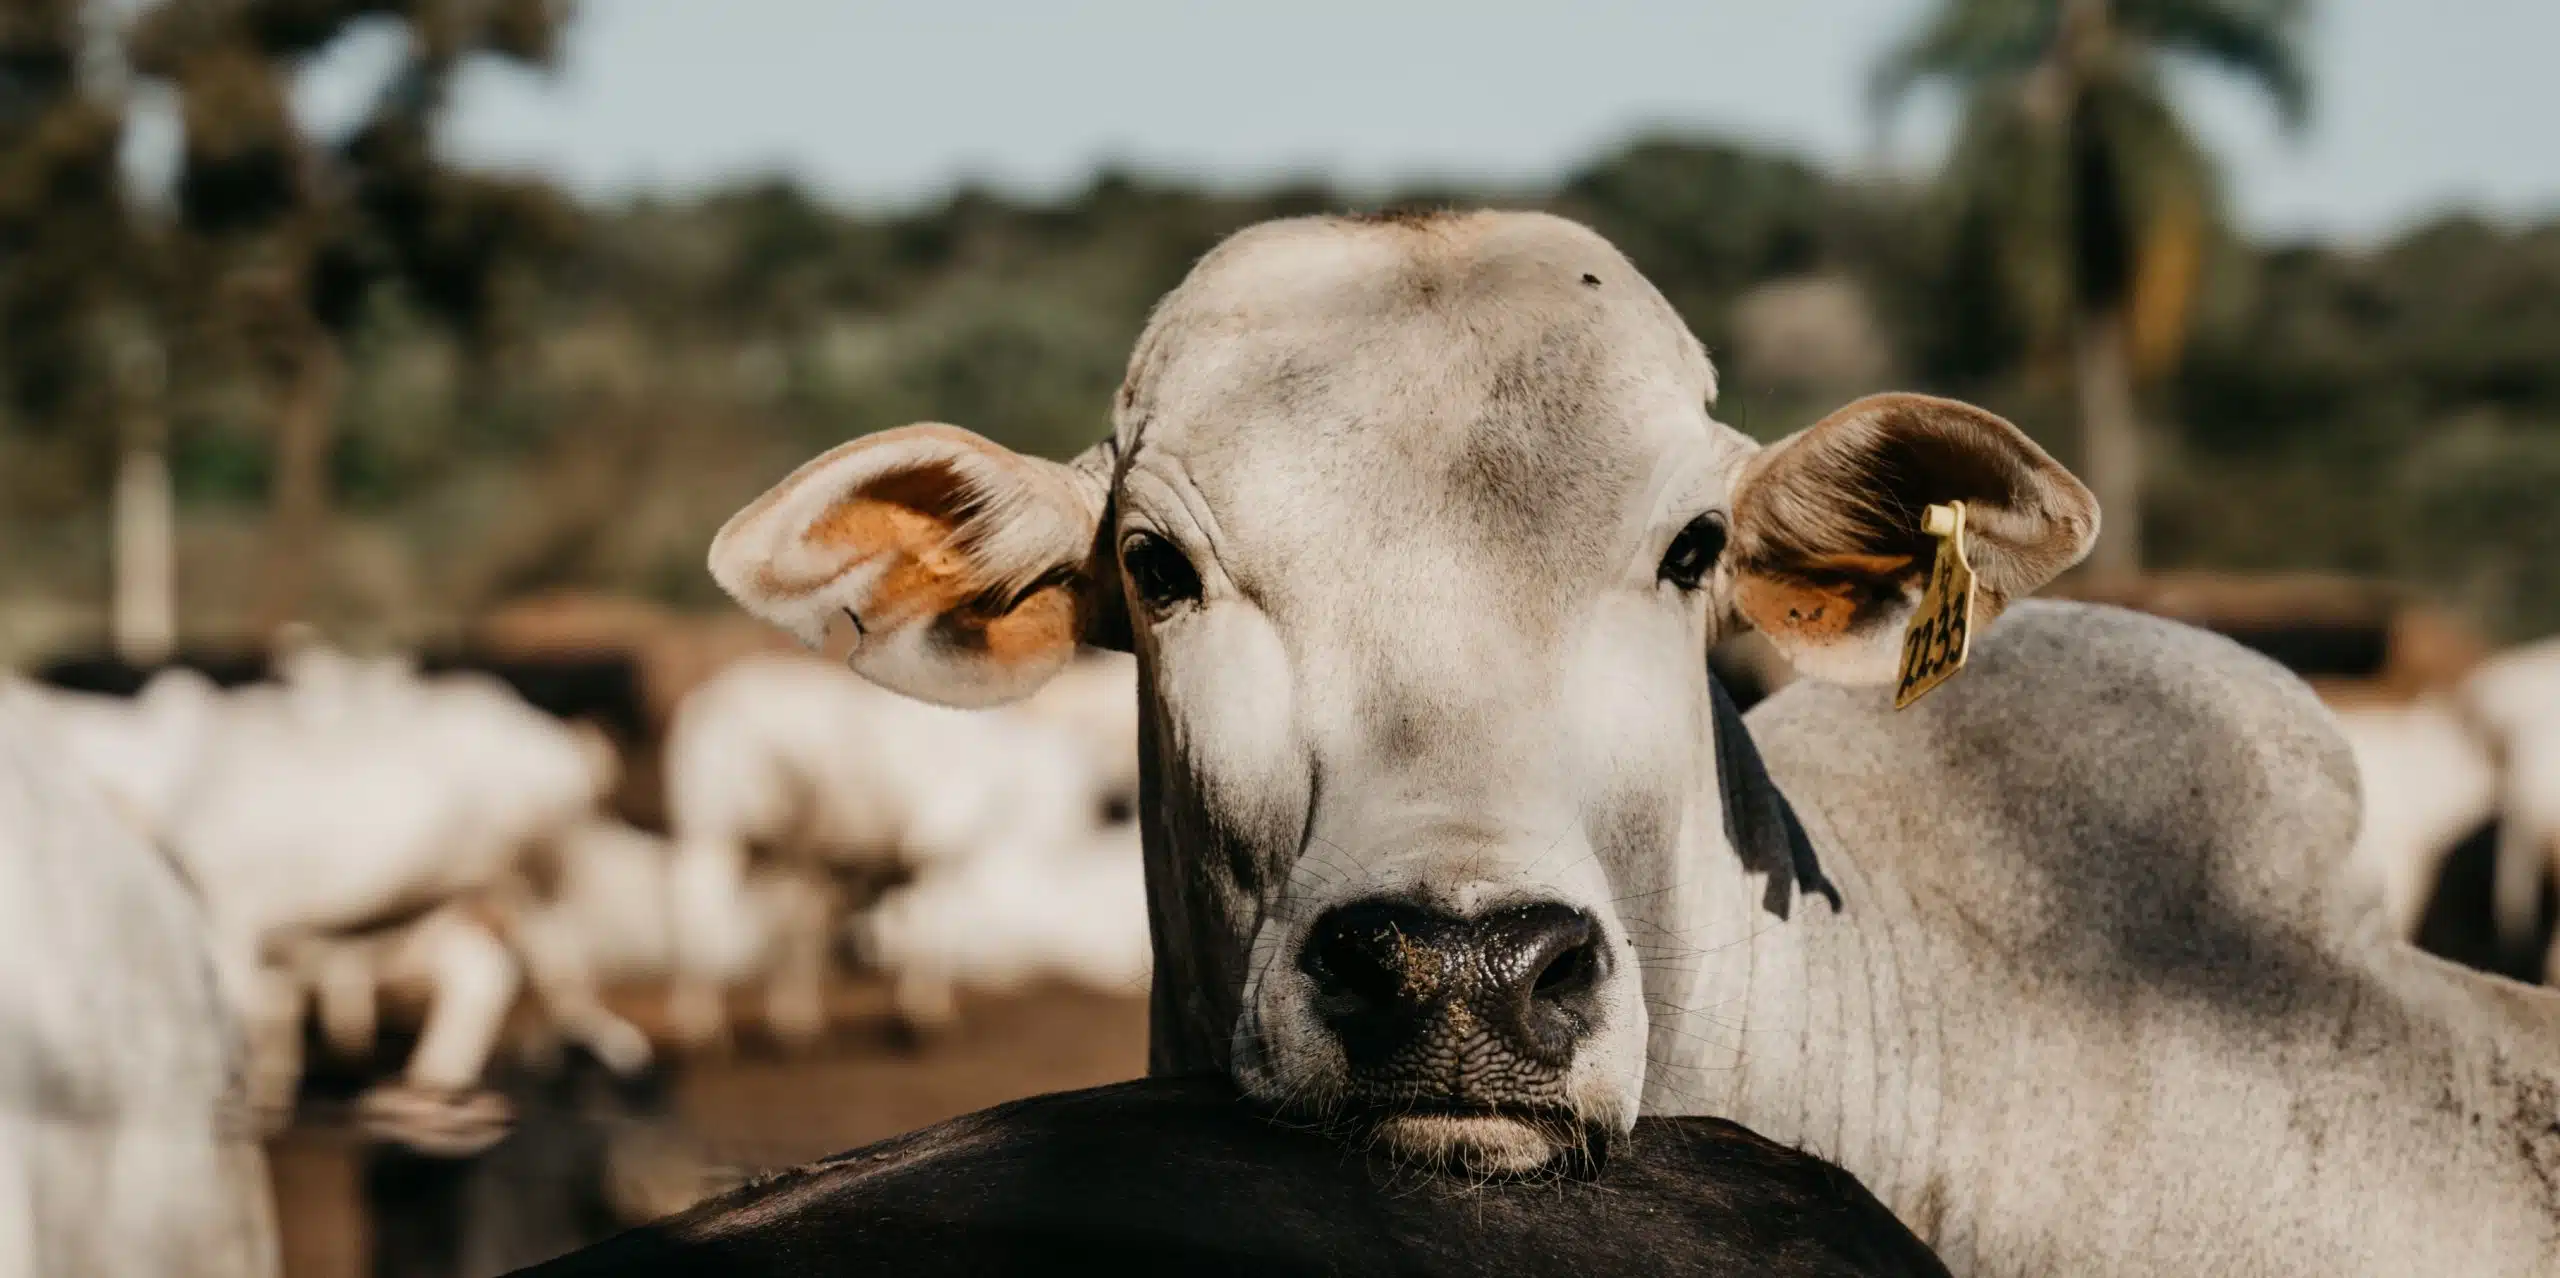 Na imagem, temos um bovino de cor branca em destaque usando brinco, ilustrando matéria de rastreabilidade bovina.